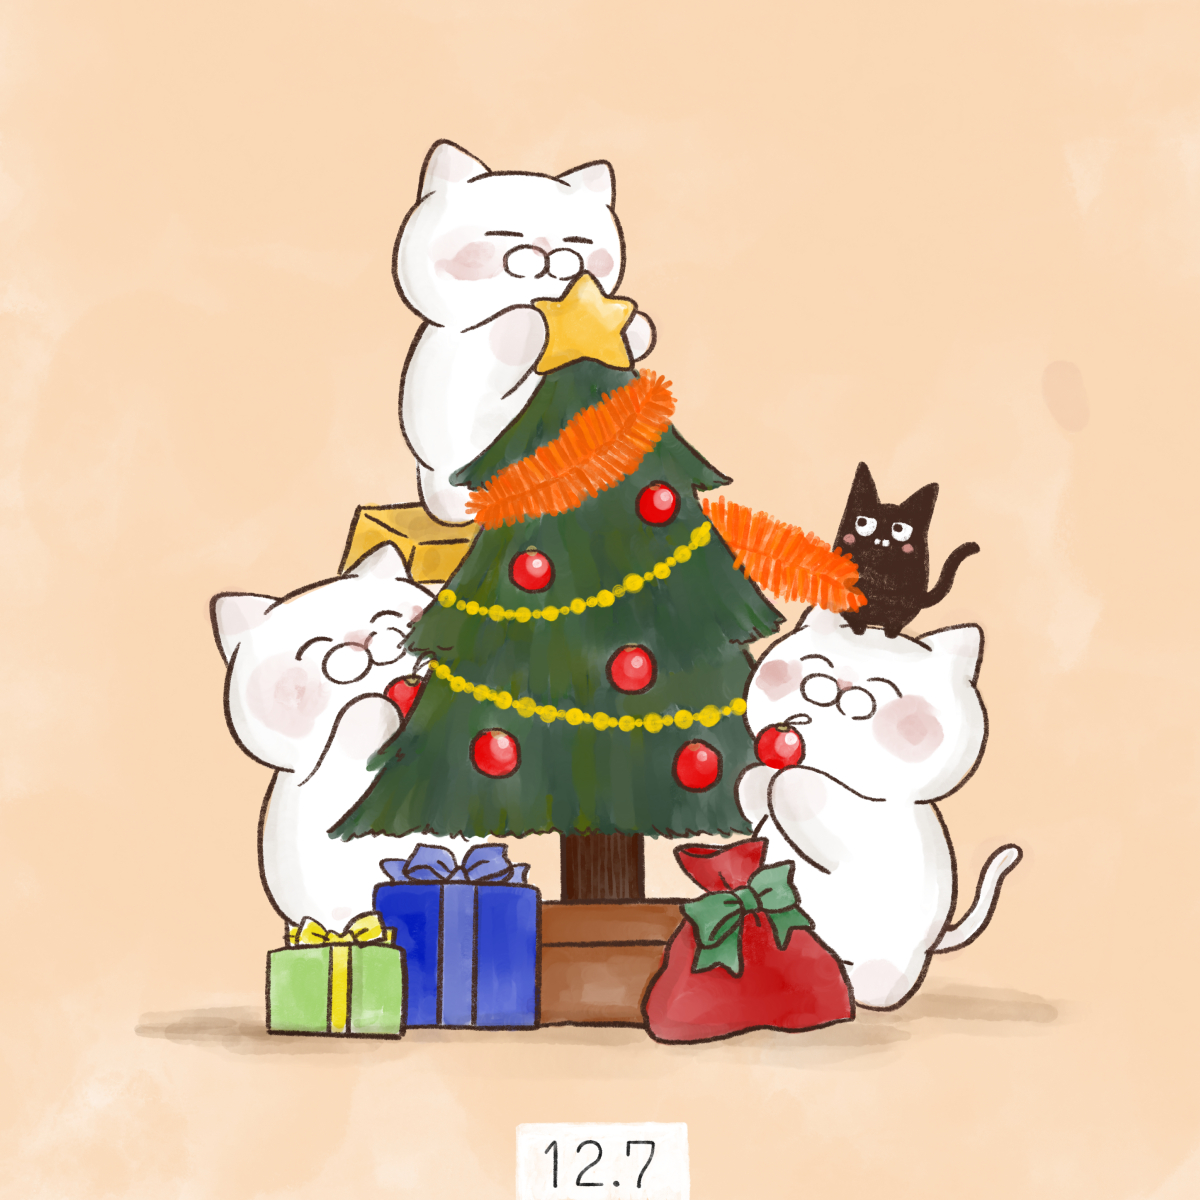 「12月7日【クリスマスツリーの日】   1886年12月7日に、横浜で外国人船員」|大和猫のイラスト